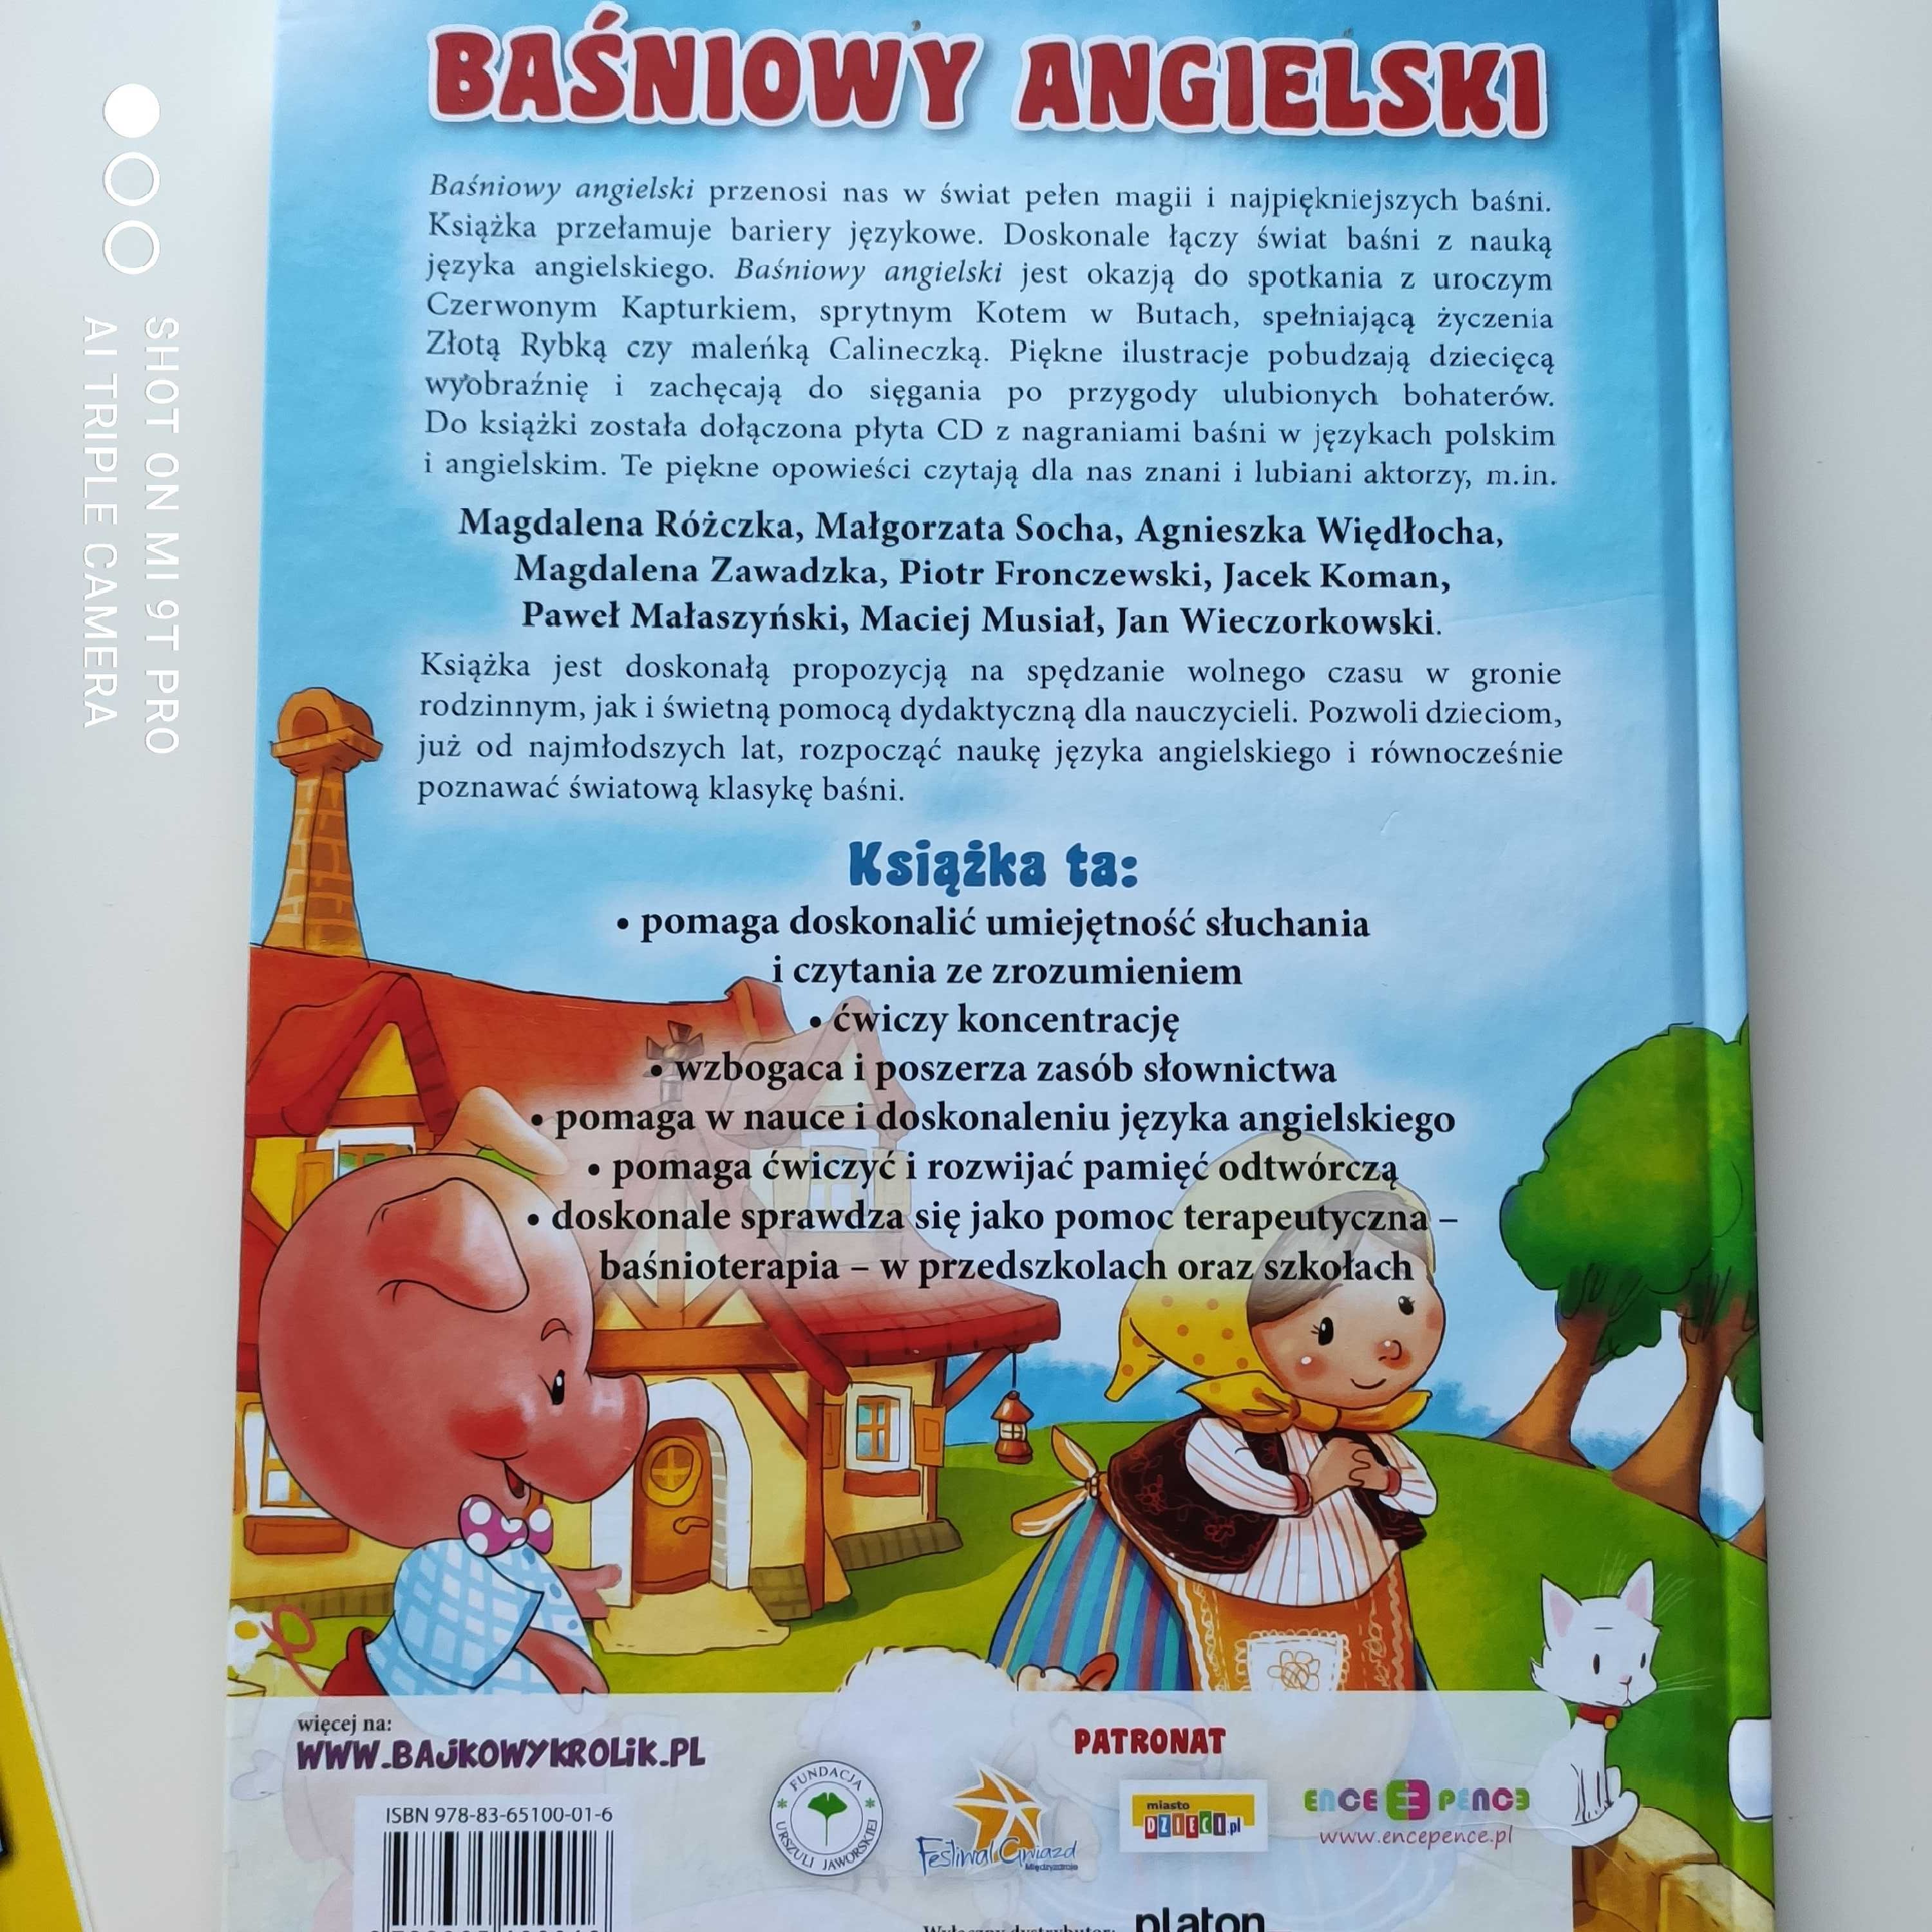 Nowy zestaw Baśniowy angielski z CD, obrazkowy słownik angielski szt 3